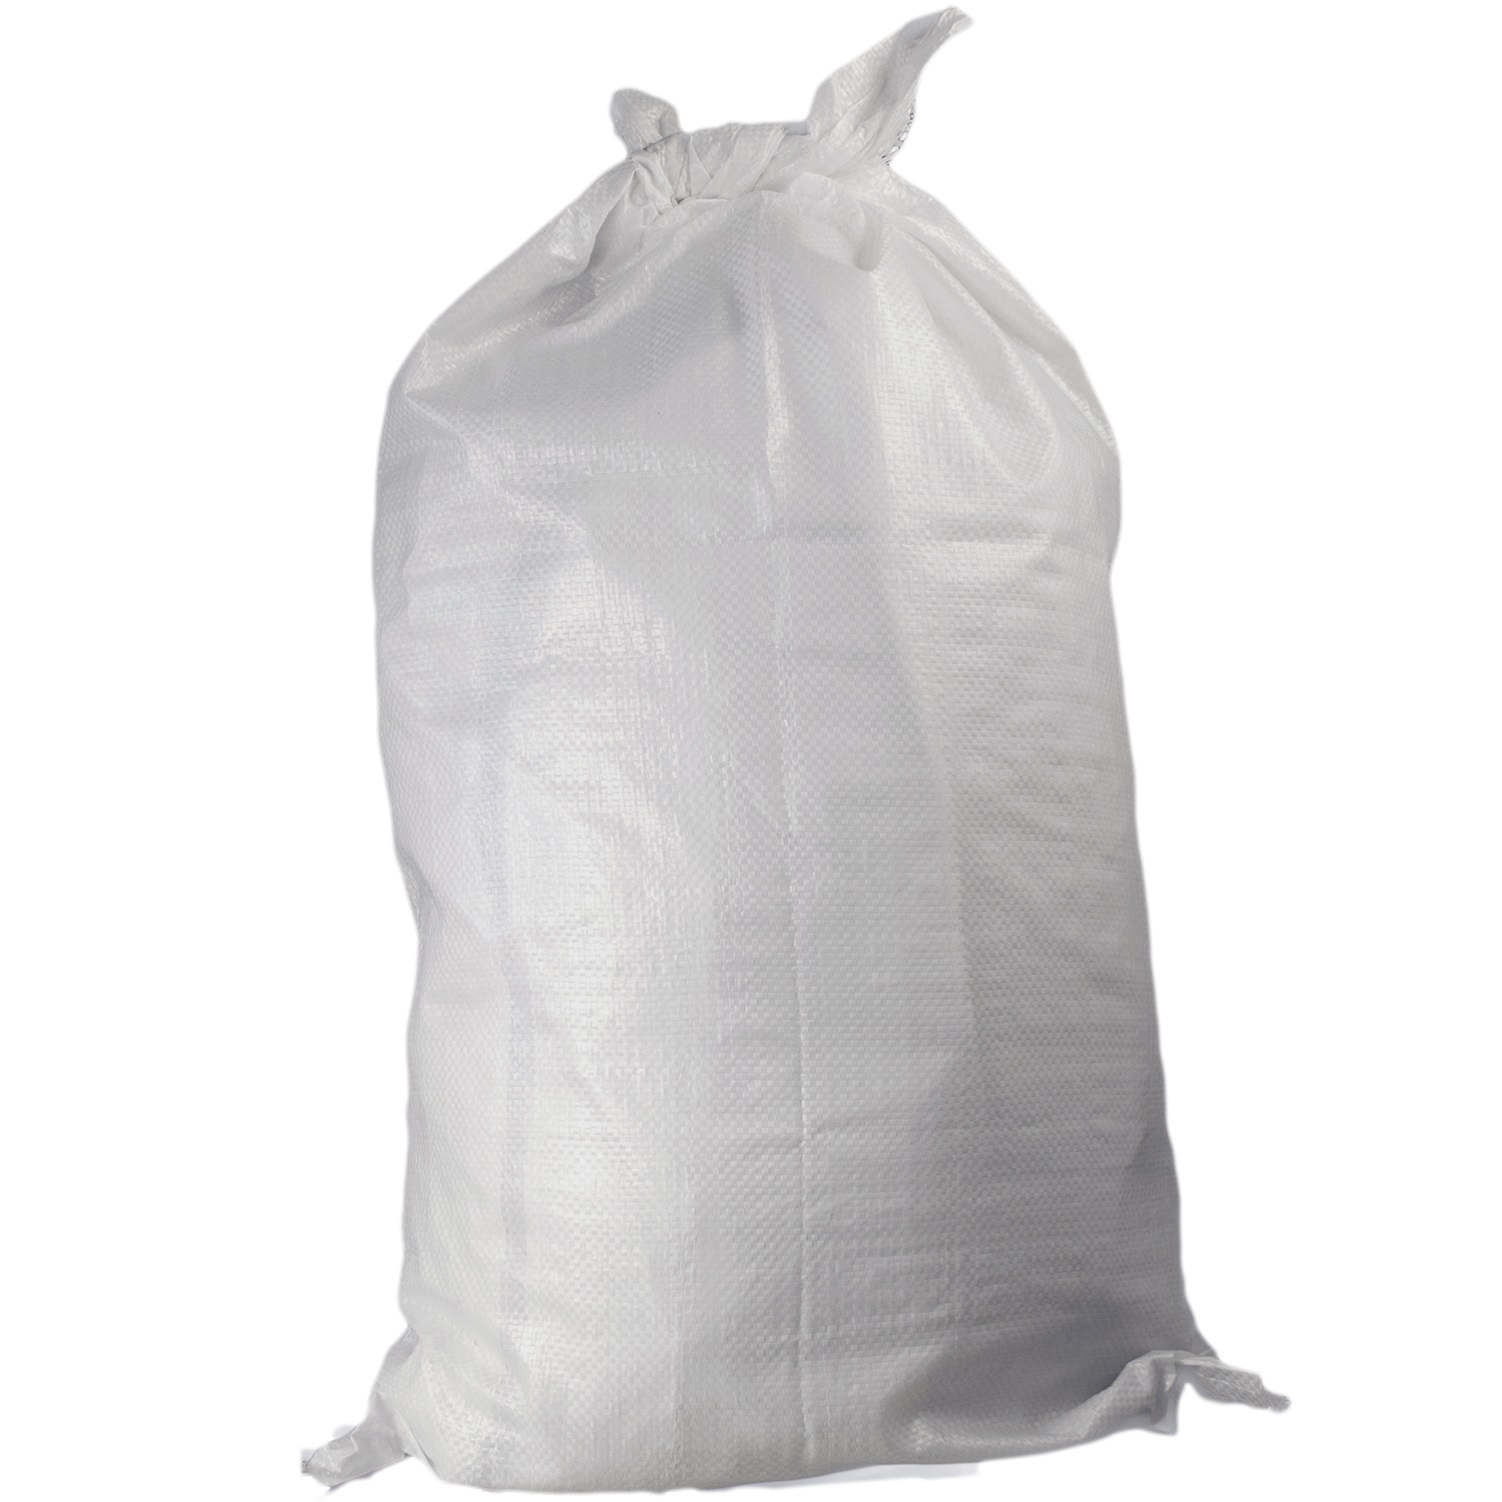 Мешки полипропиленовые белые 55 x 105 см, 60+/-3 г, 45-50 кг, термообрез 1п-1с, Высший сорт